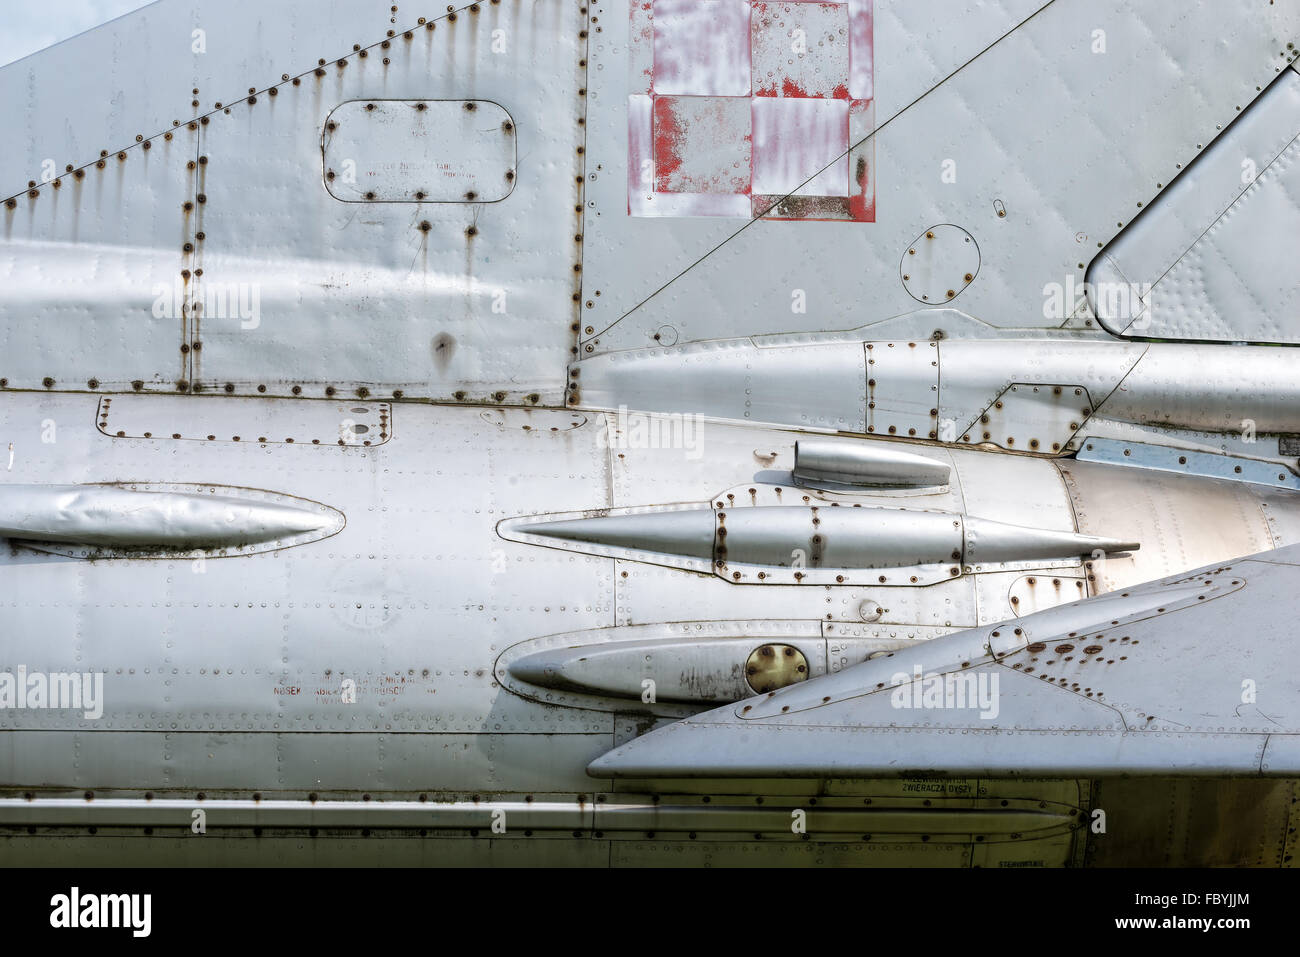 MiG-21 Stock Photo